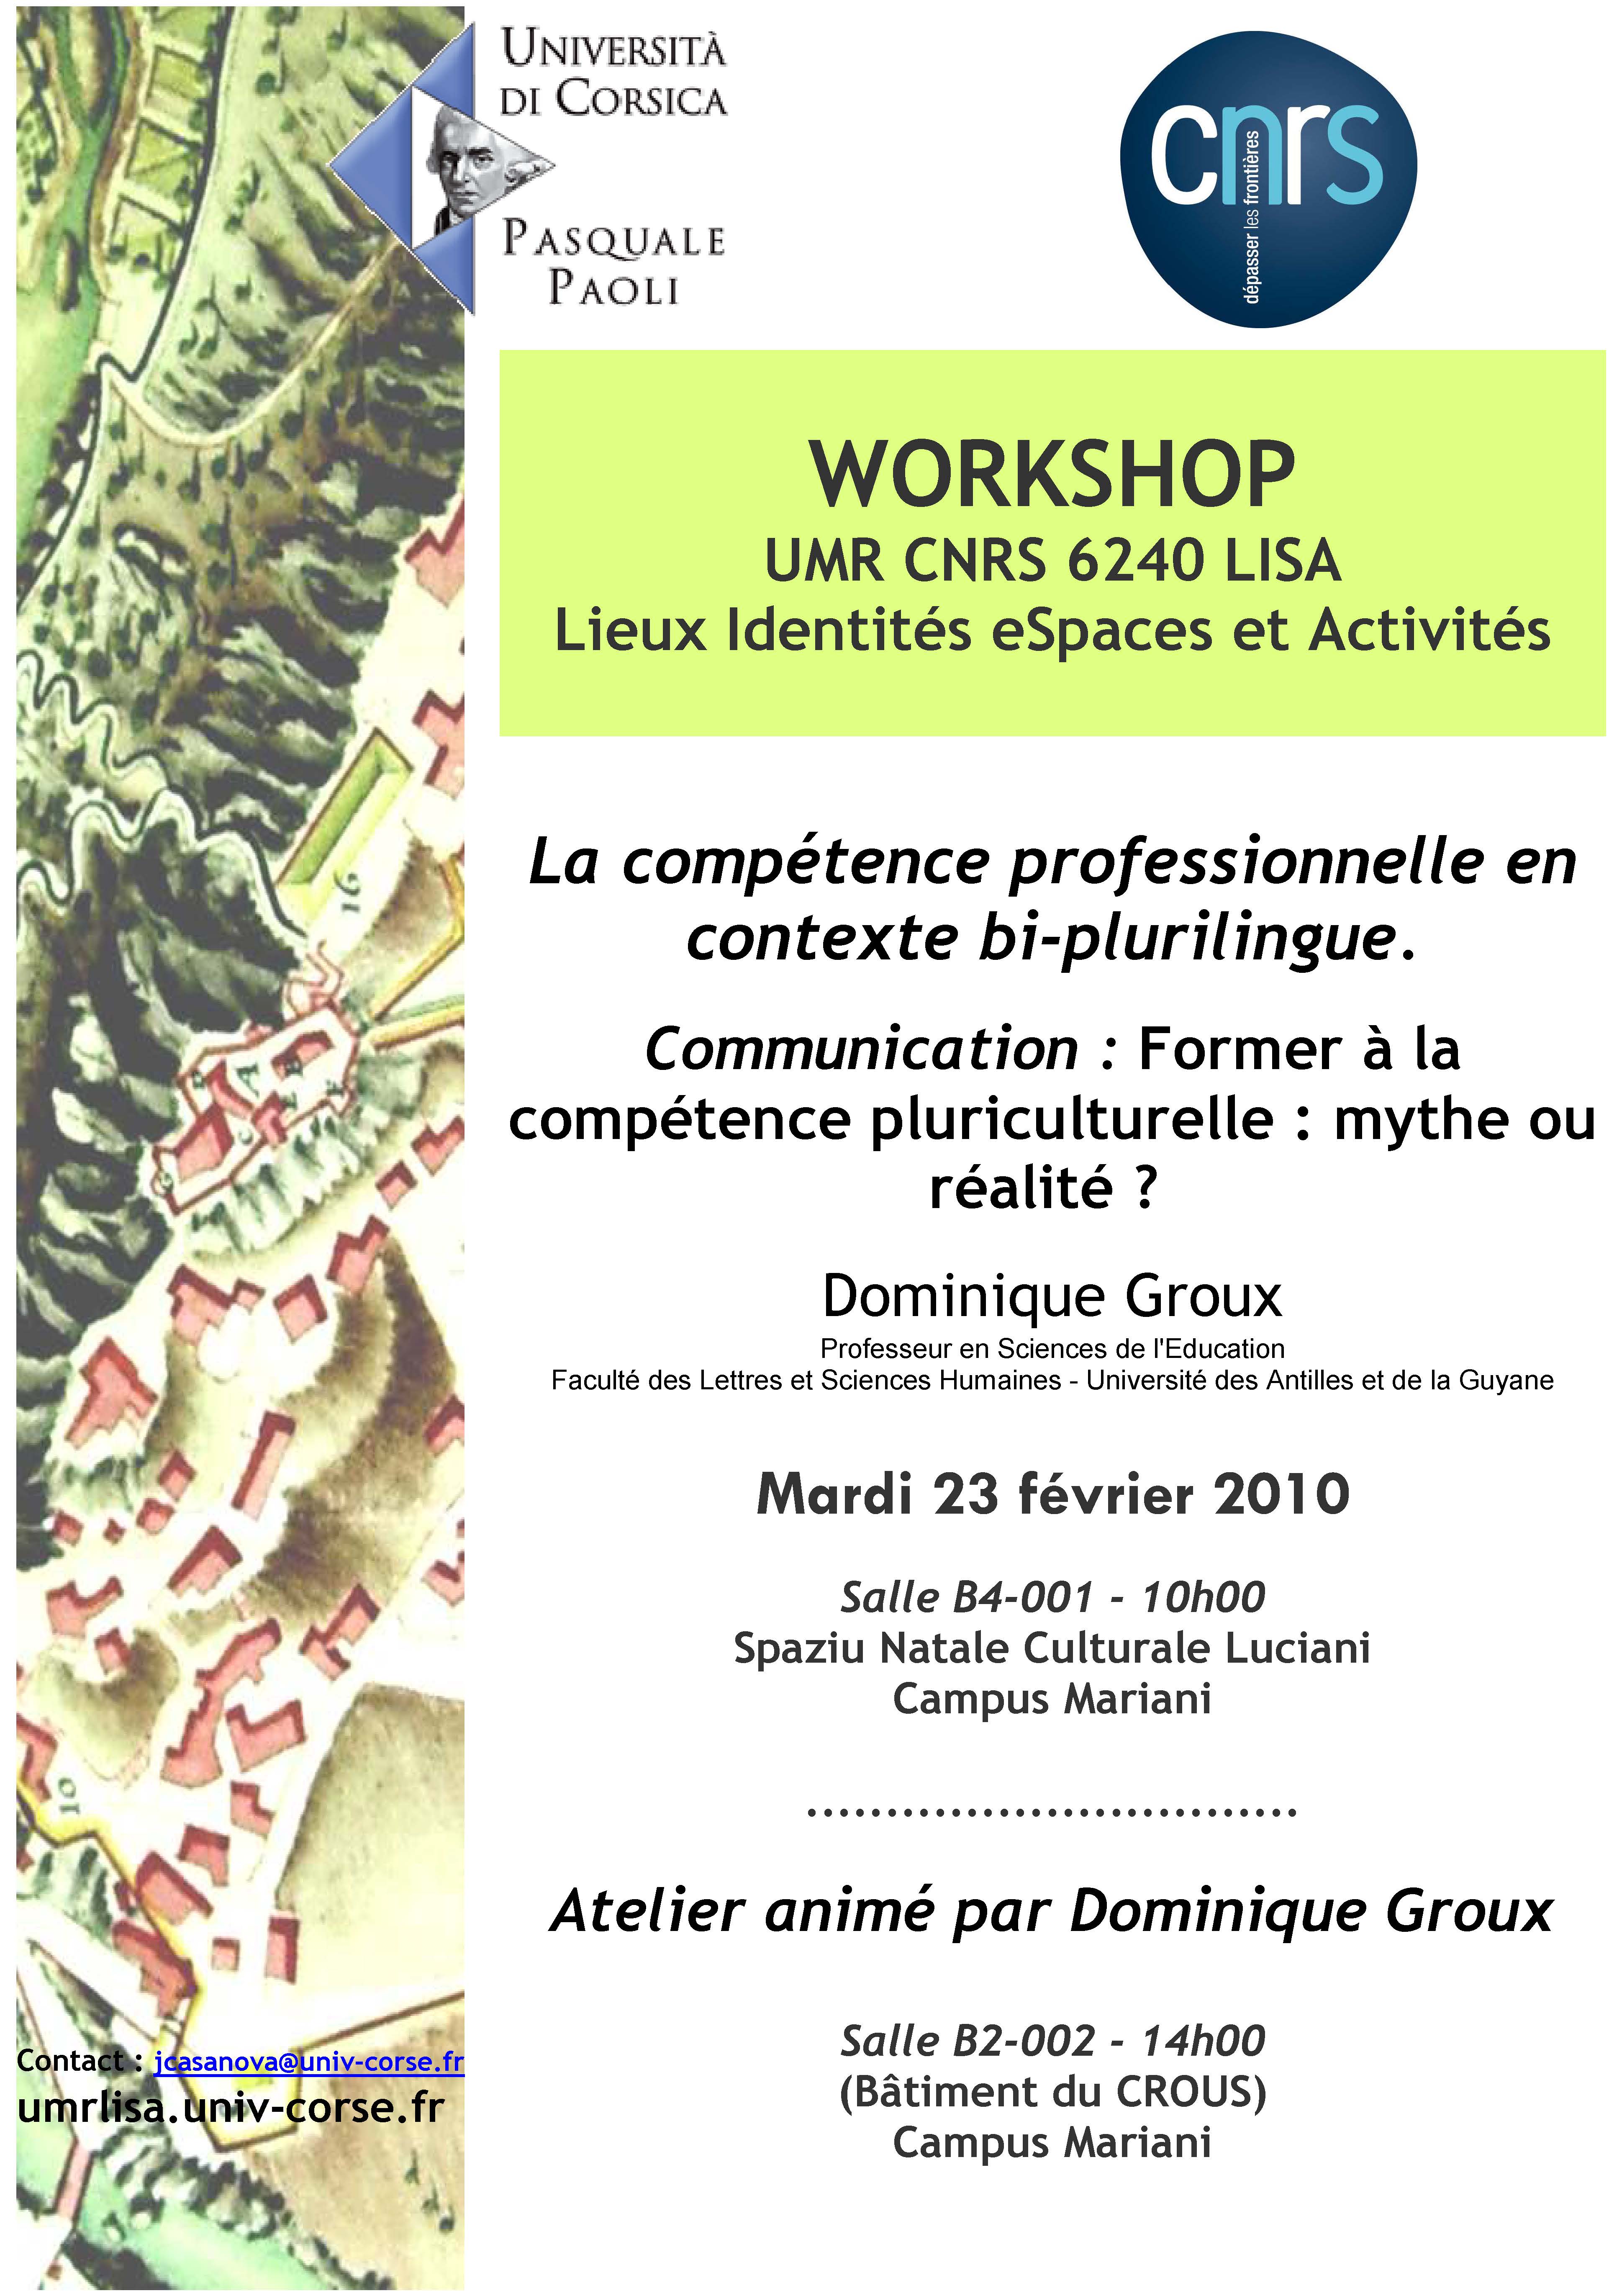 Workshop Dominique Groux - La compétence professionnelle en contexte bi-plurilingue